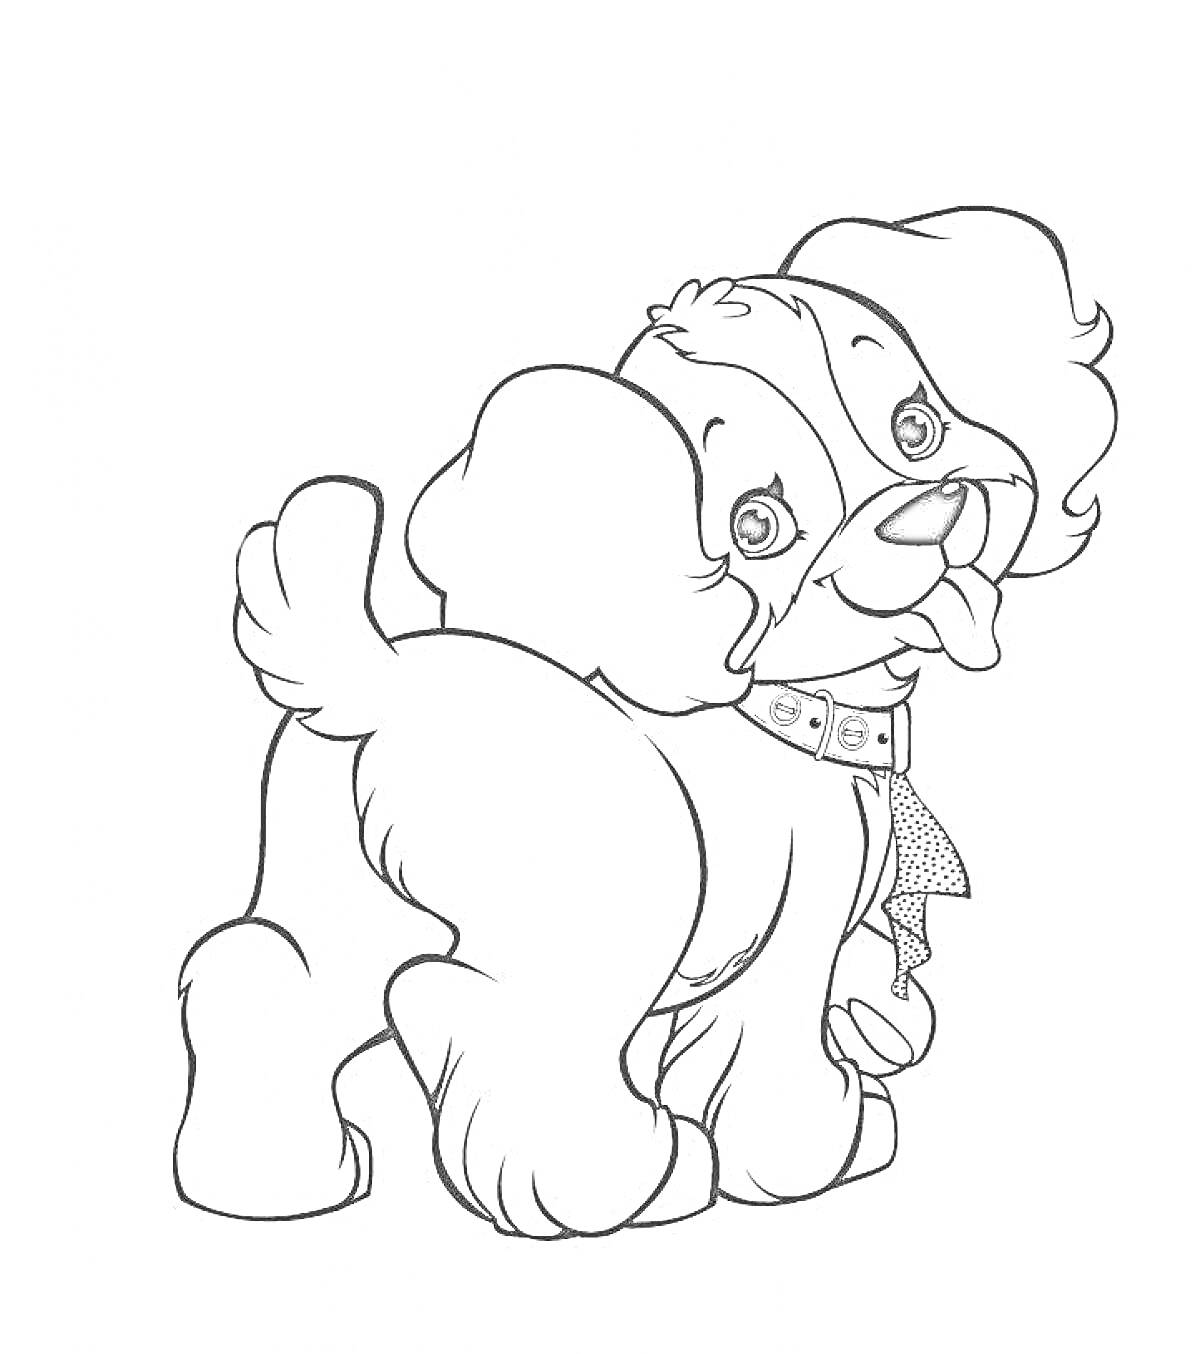 Раскраска Собачка с большими ушами, бантом на шее, высунутым языком